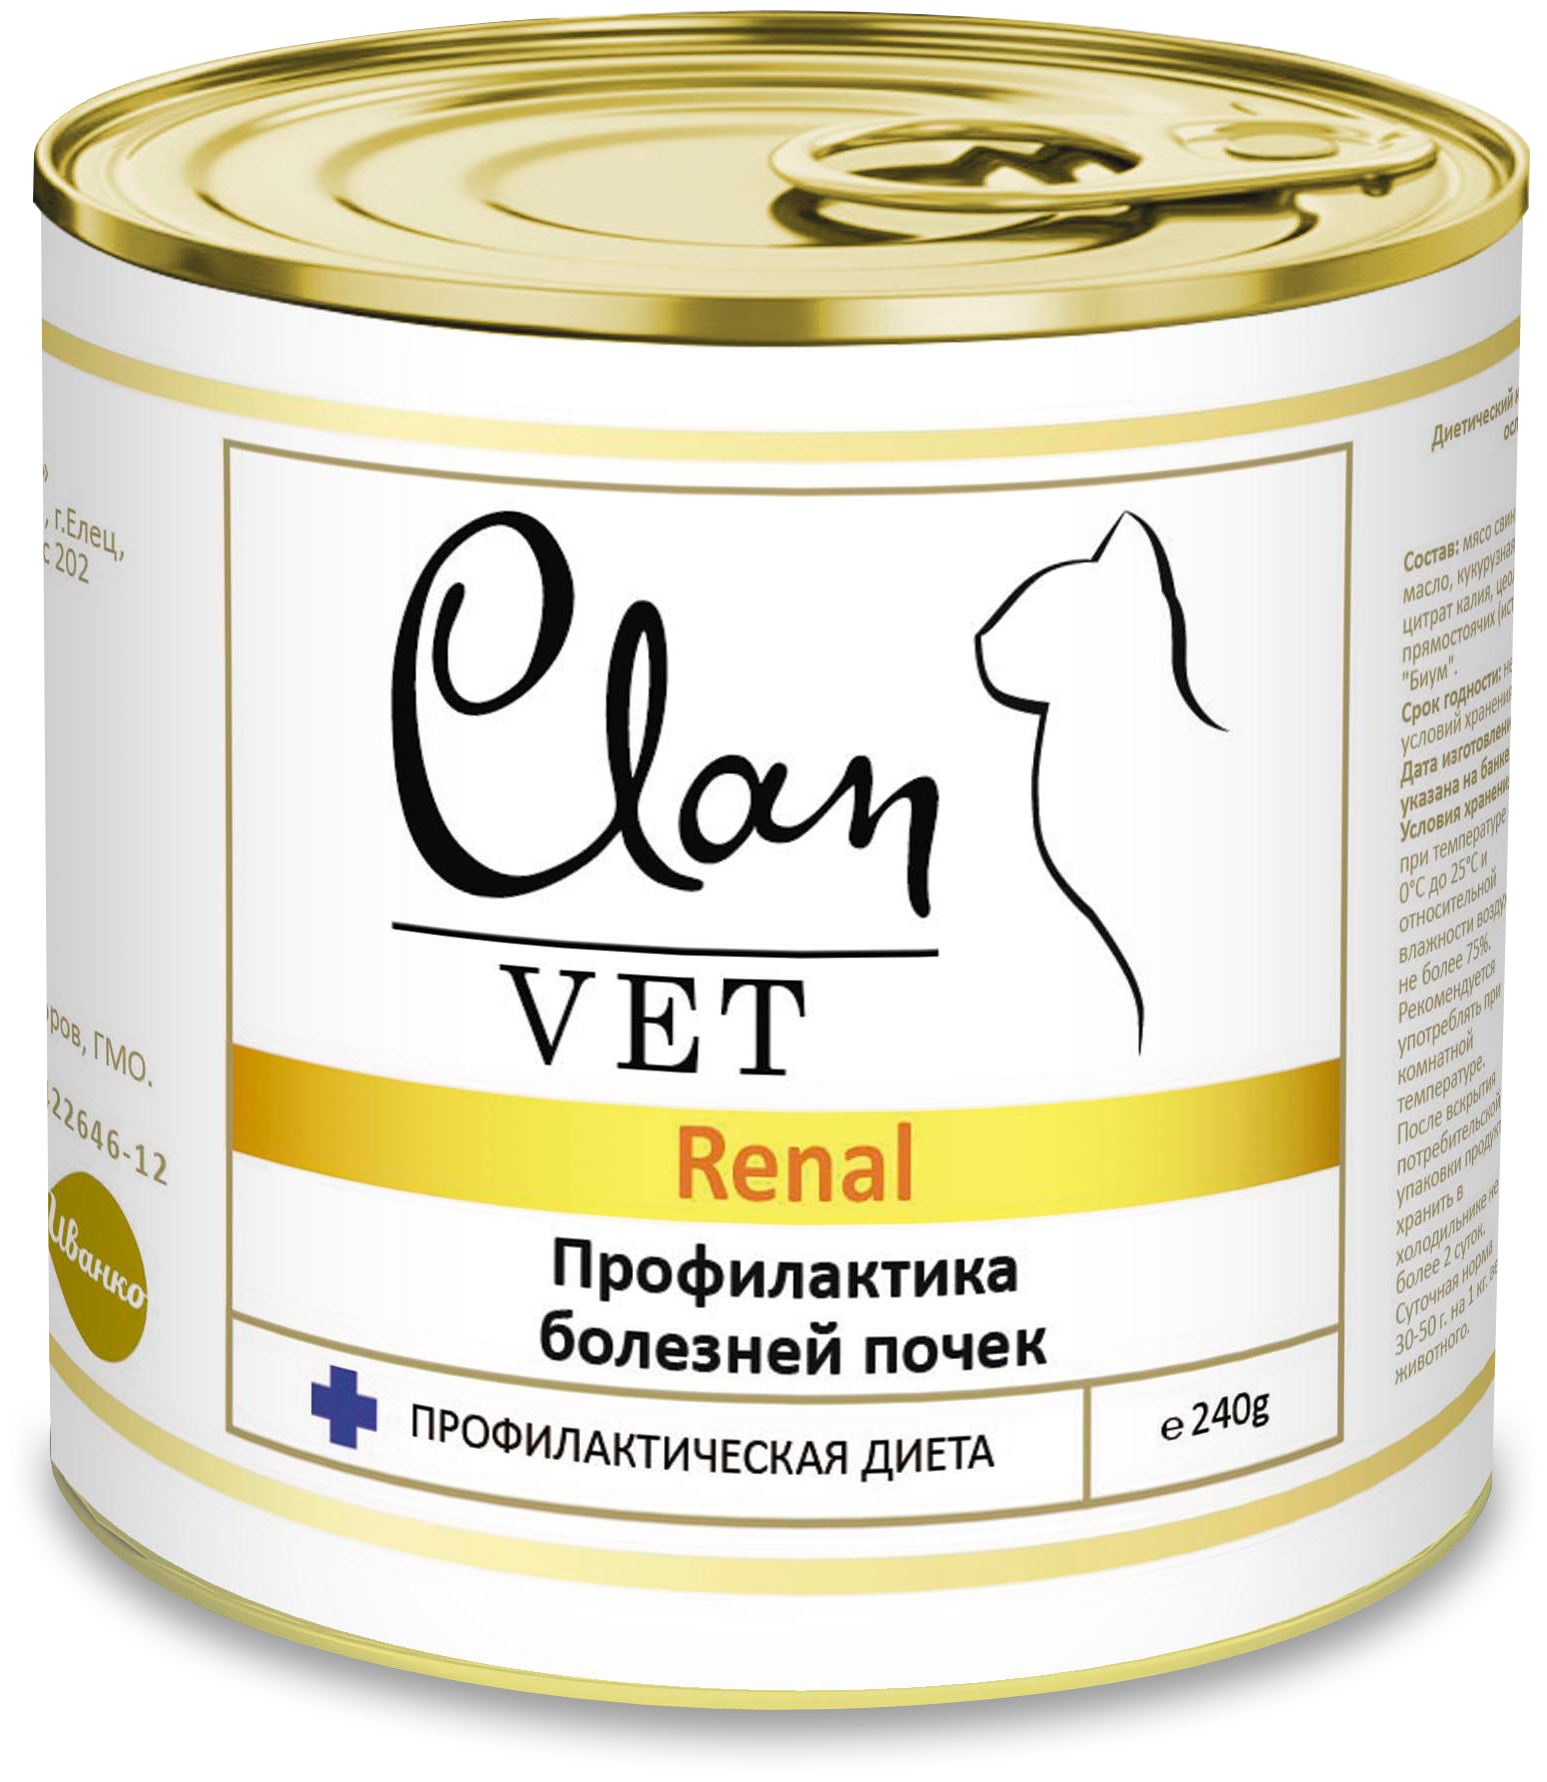 CLAN VET RENAL диетические консервы для кошек Профилактика болезней почек 240г